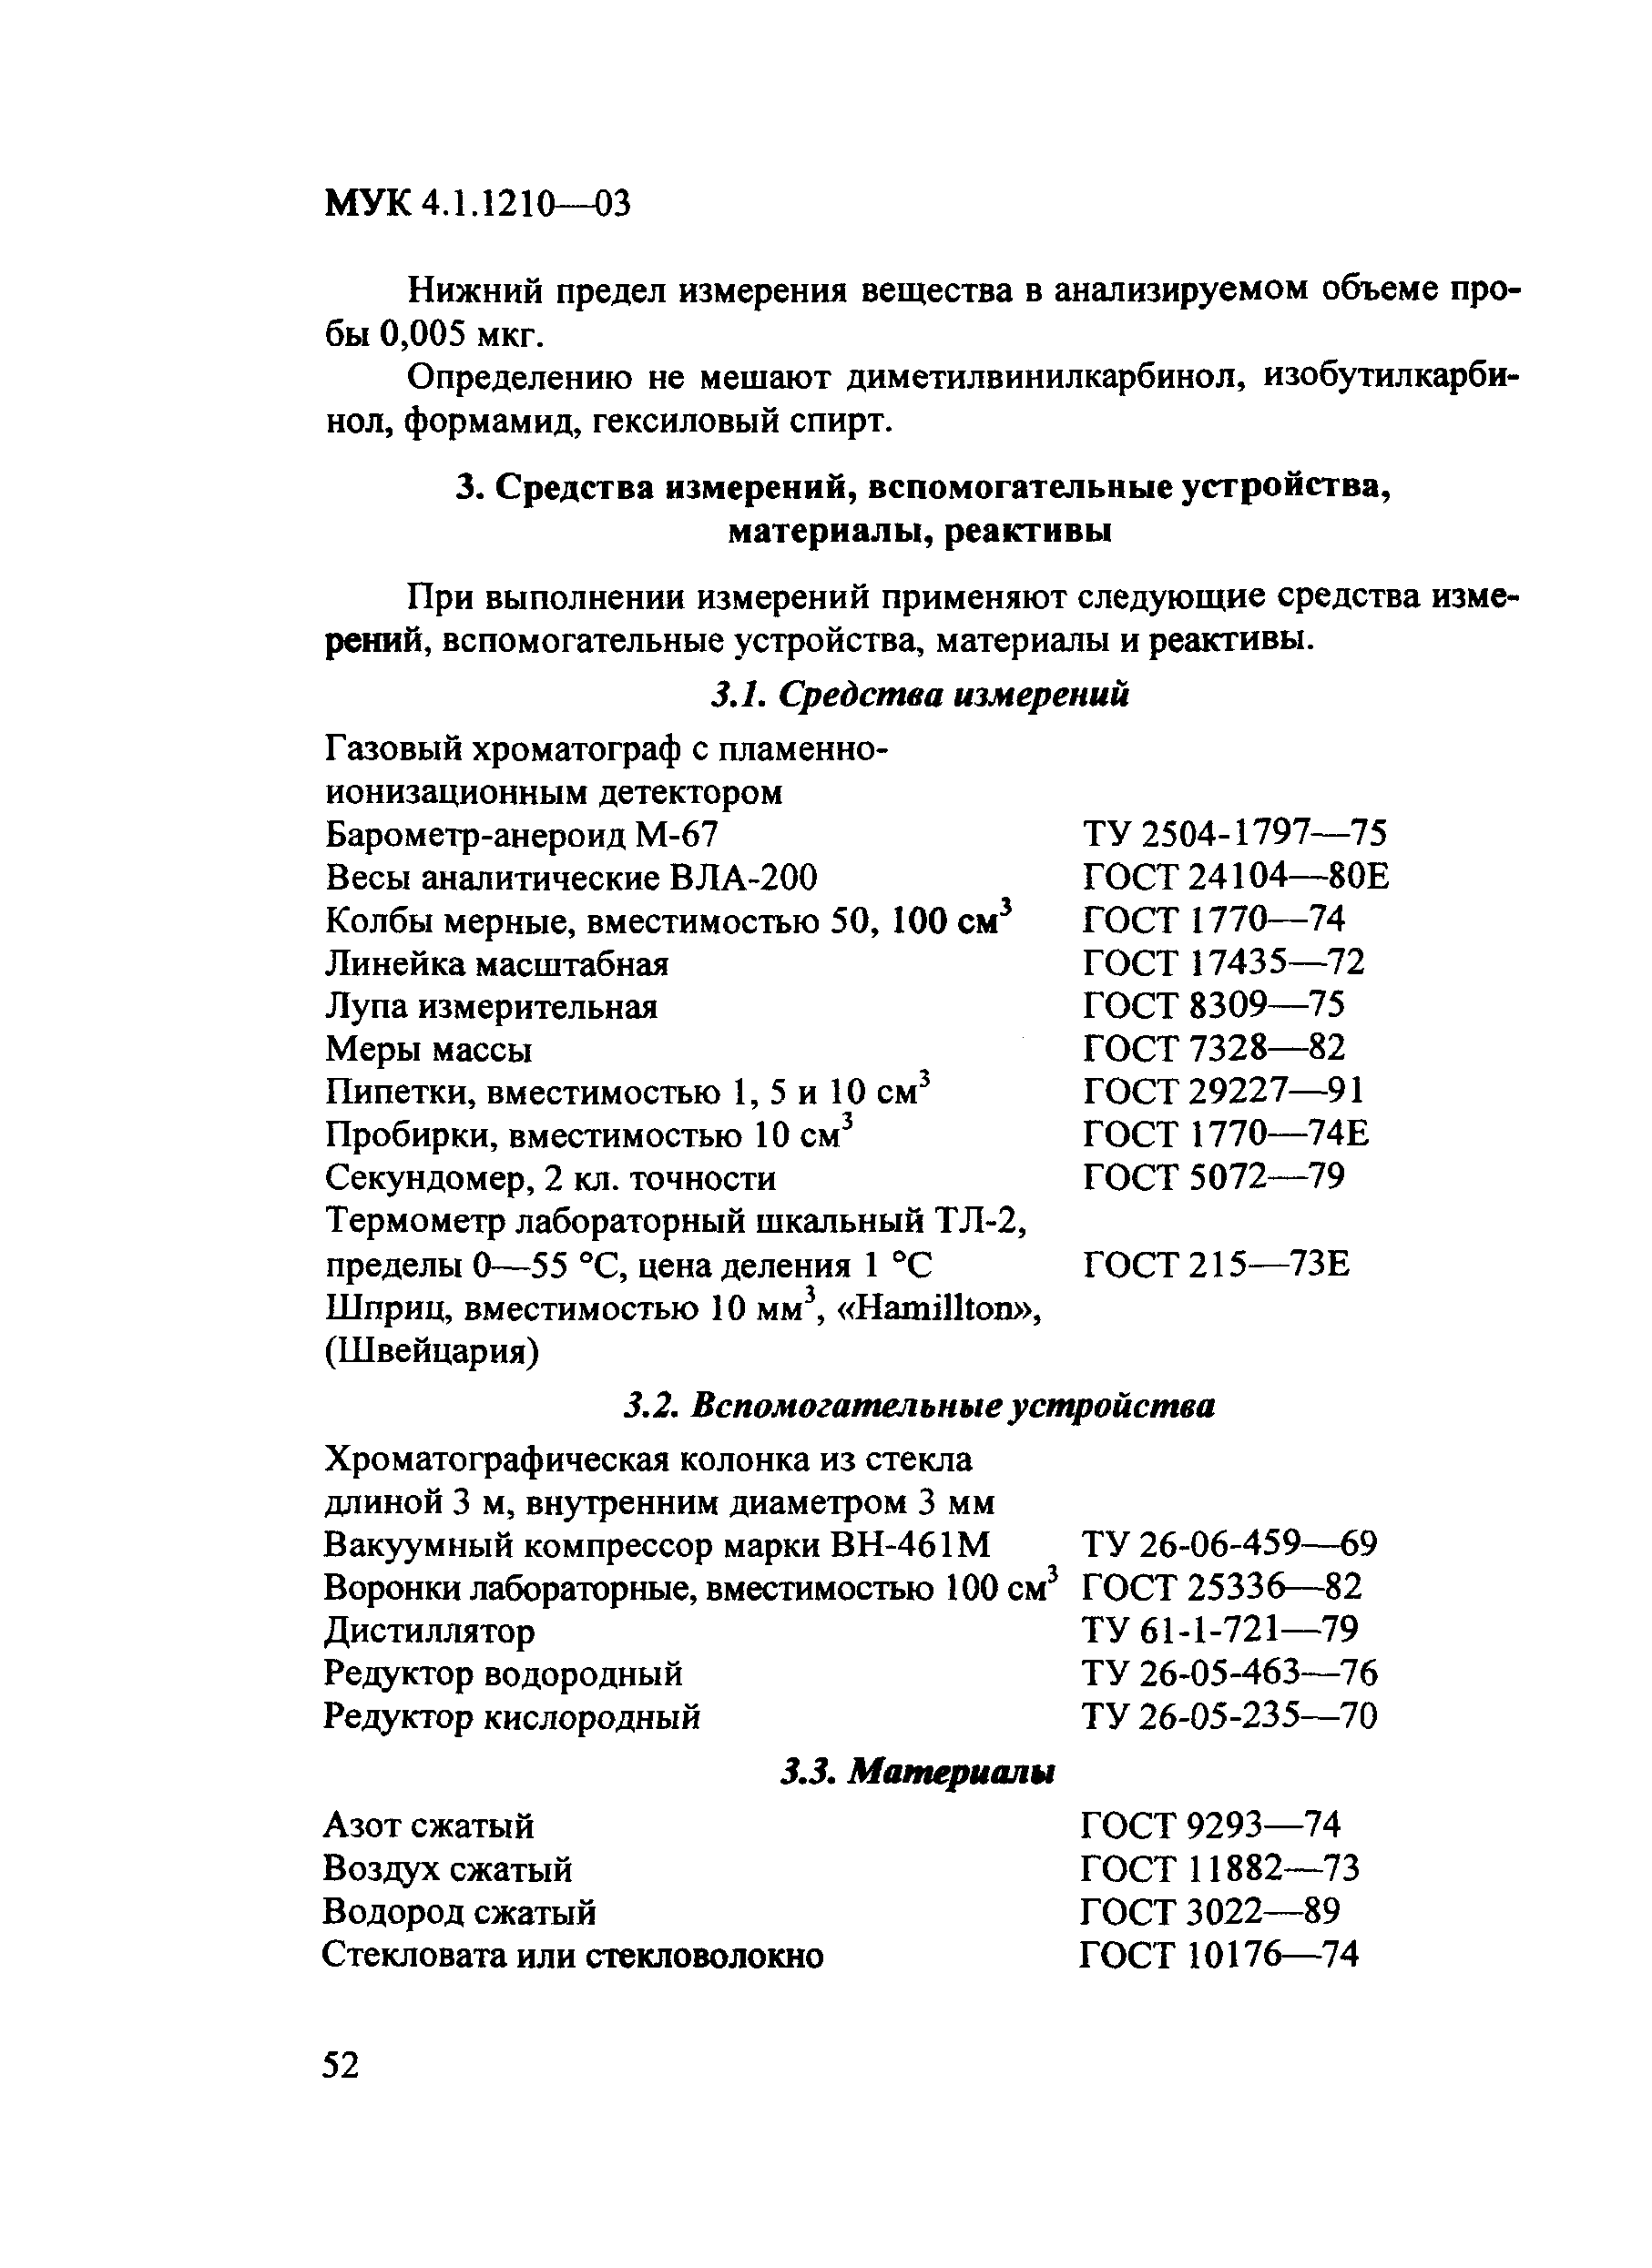 МУК 4.1.1210-03